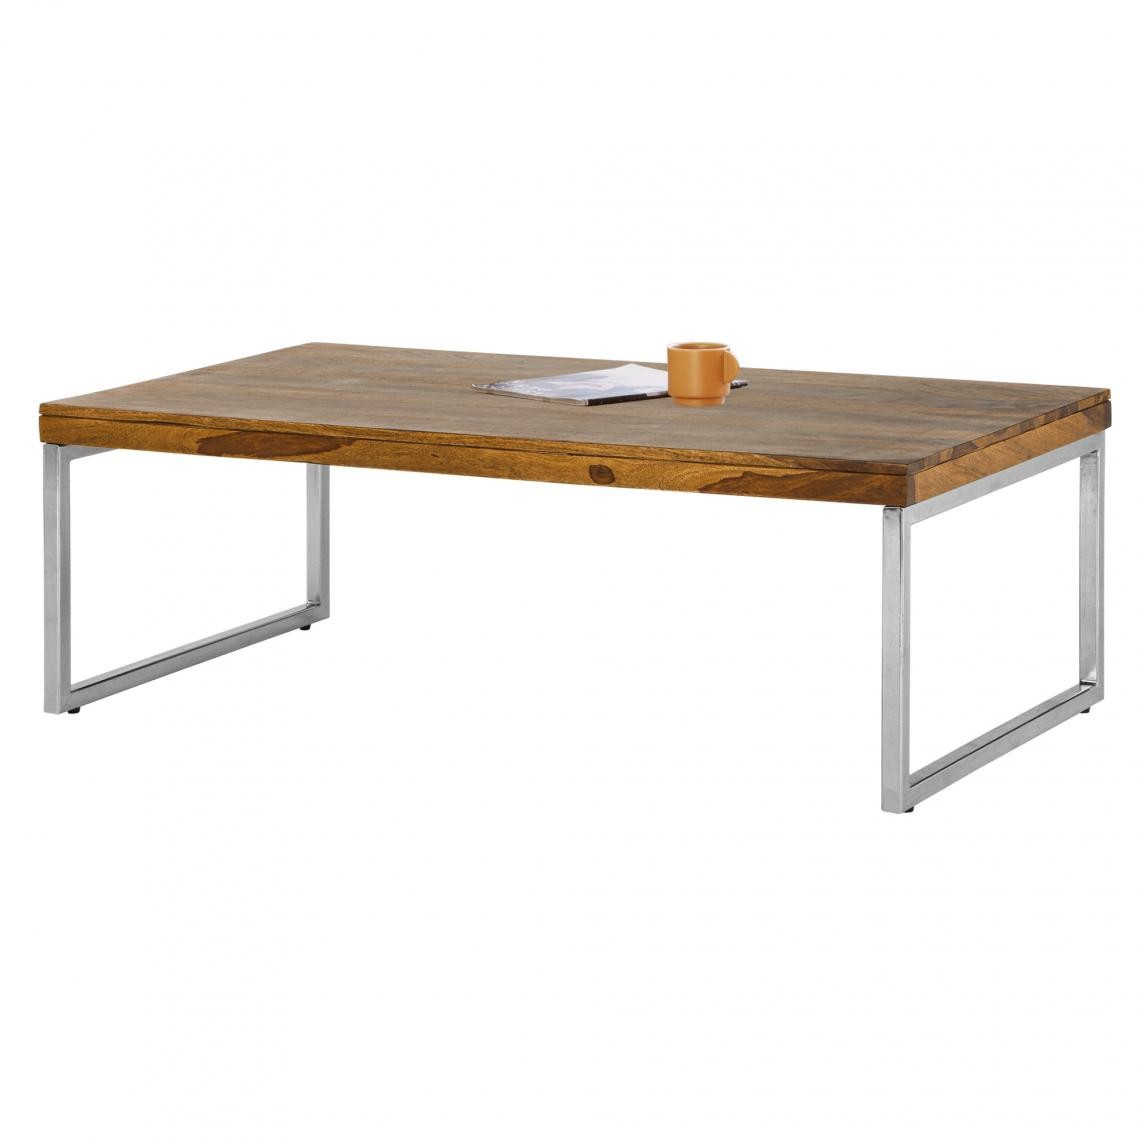 Womo-design - Table basse d'appoint pour salon en bois Sheesham et acier brun 120x60x40 cm - Tables basses